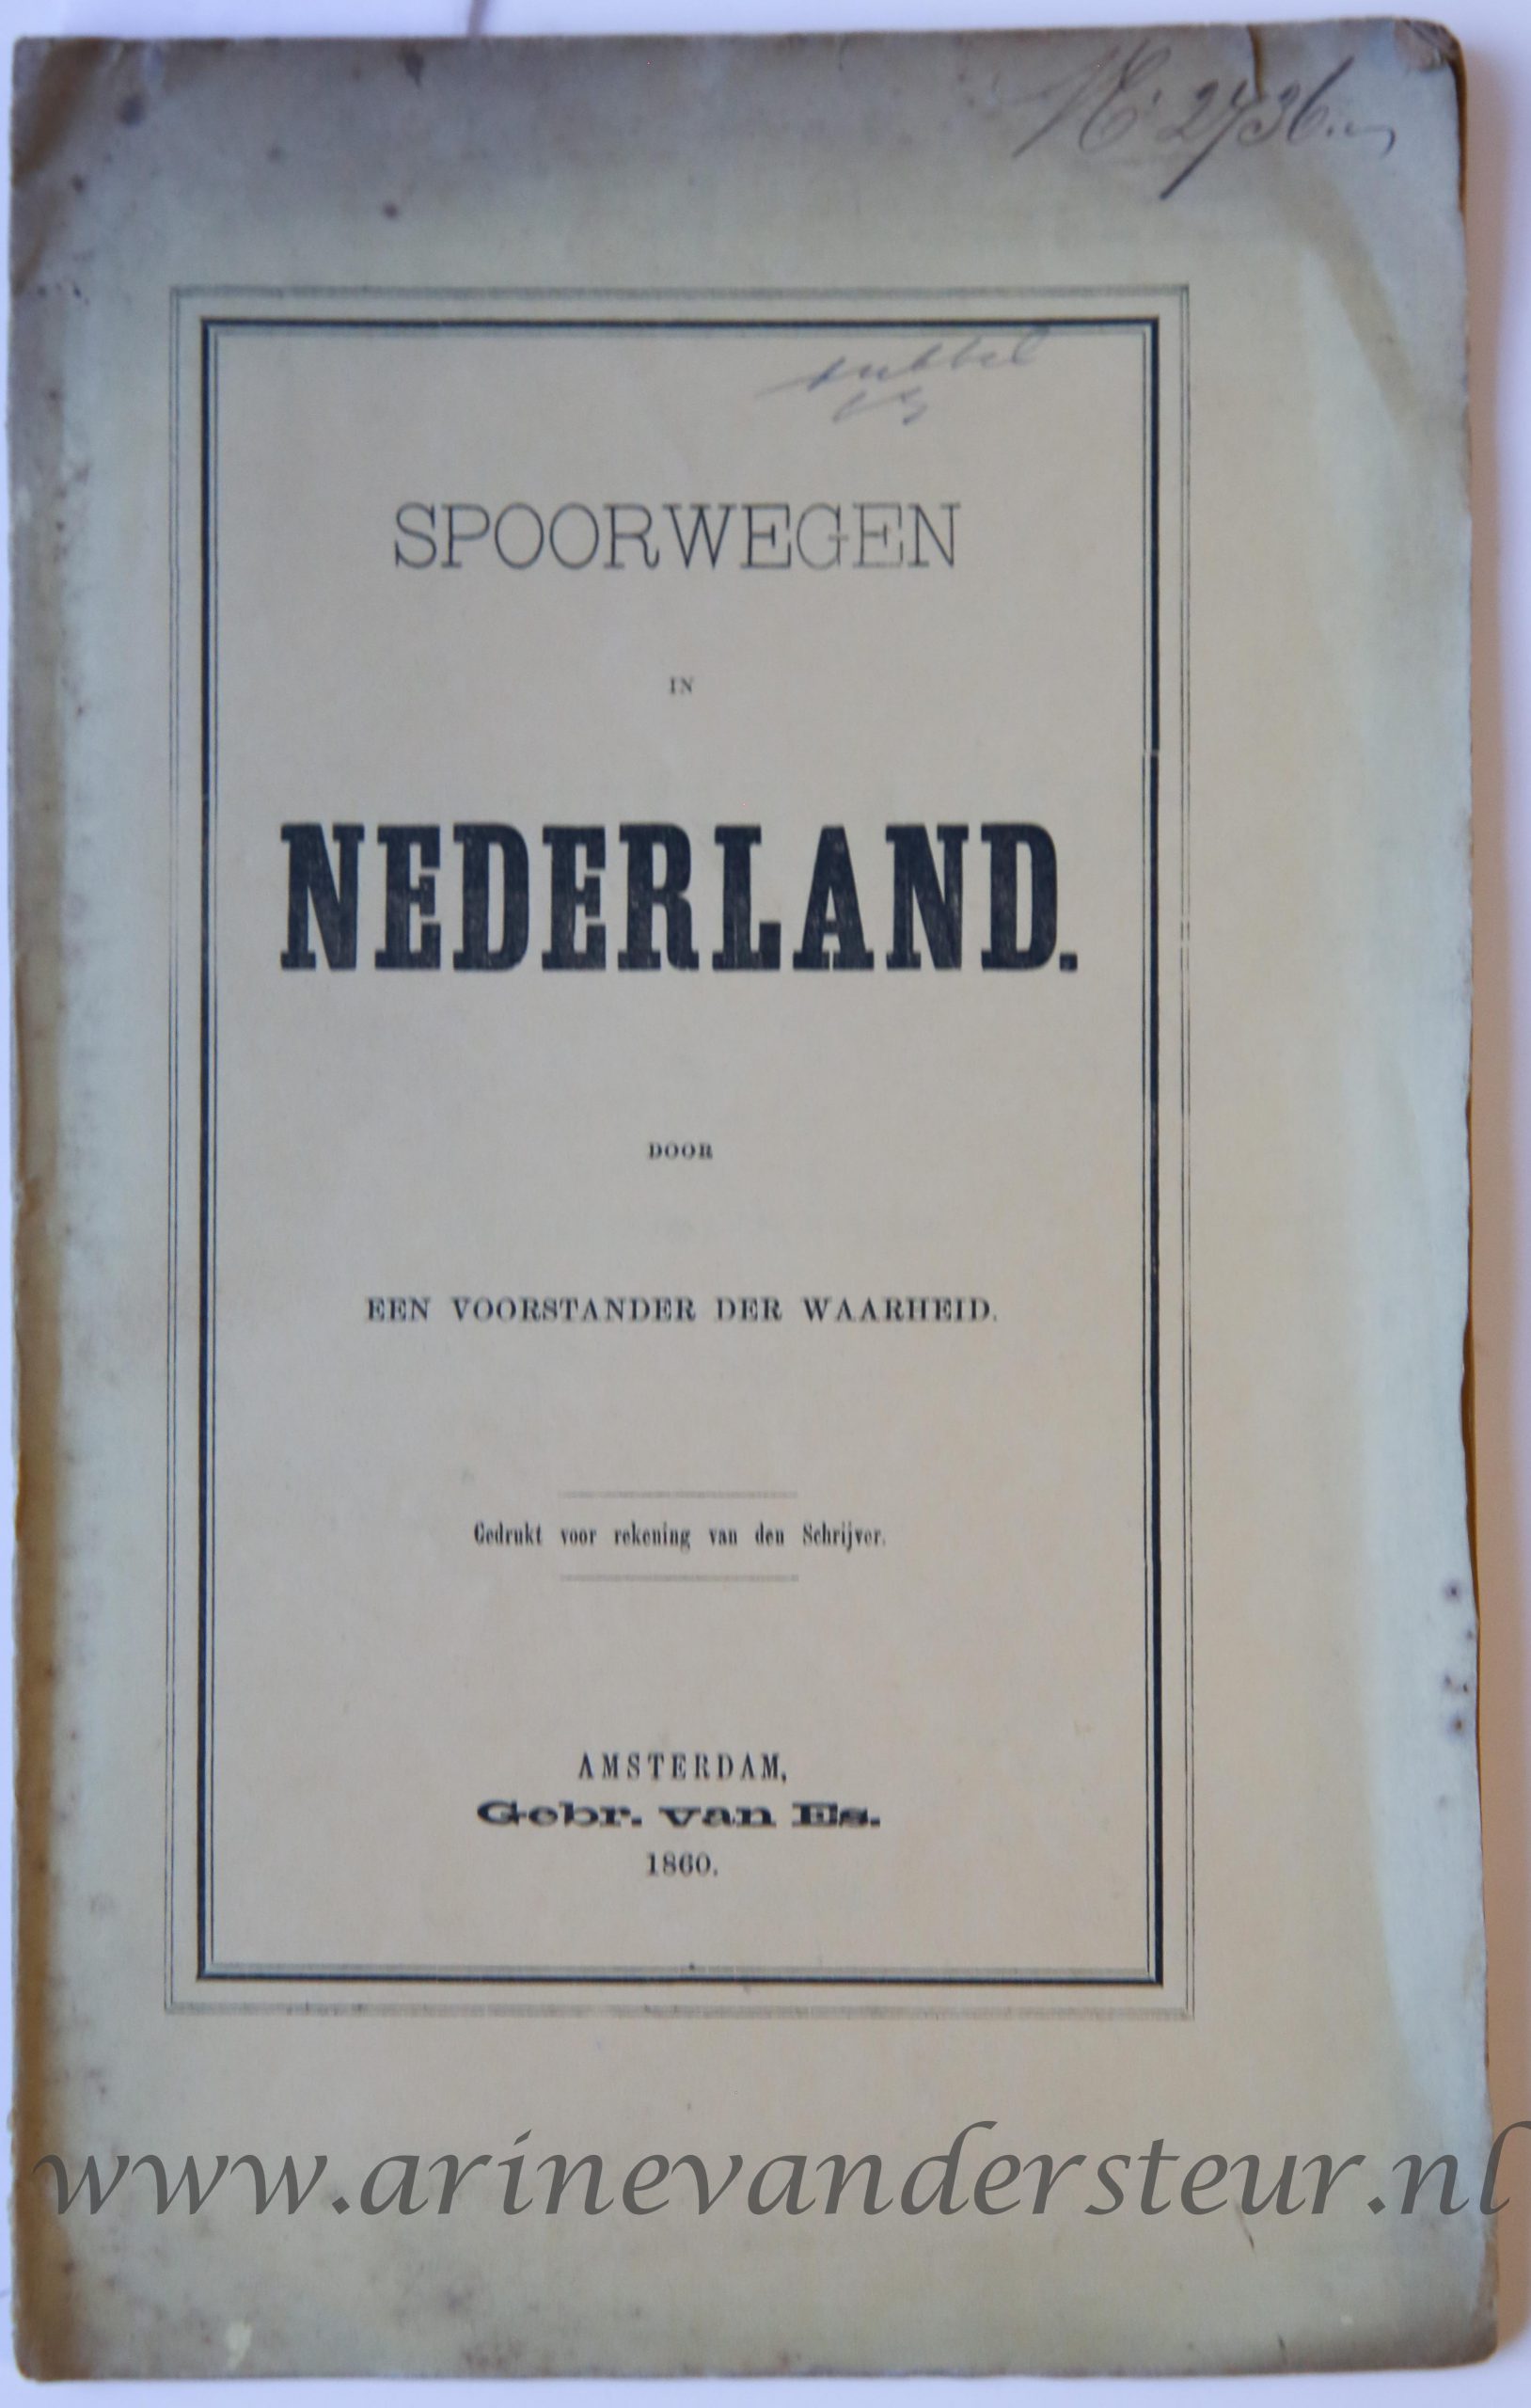 Spoorwegen in Nederland door een Voorstander der Waarheid, Amsterdam, Gebr. van Es, 1860, 22 pp.